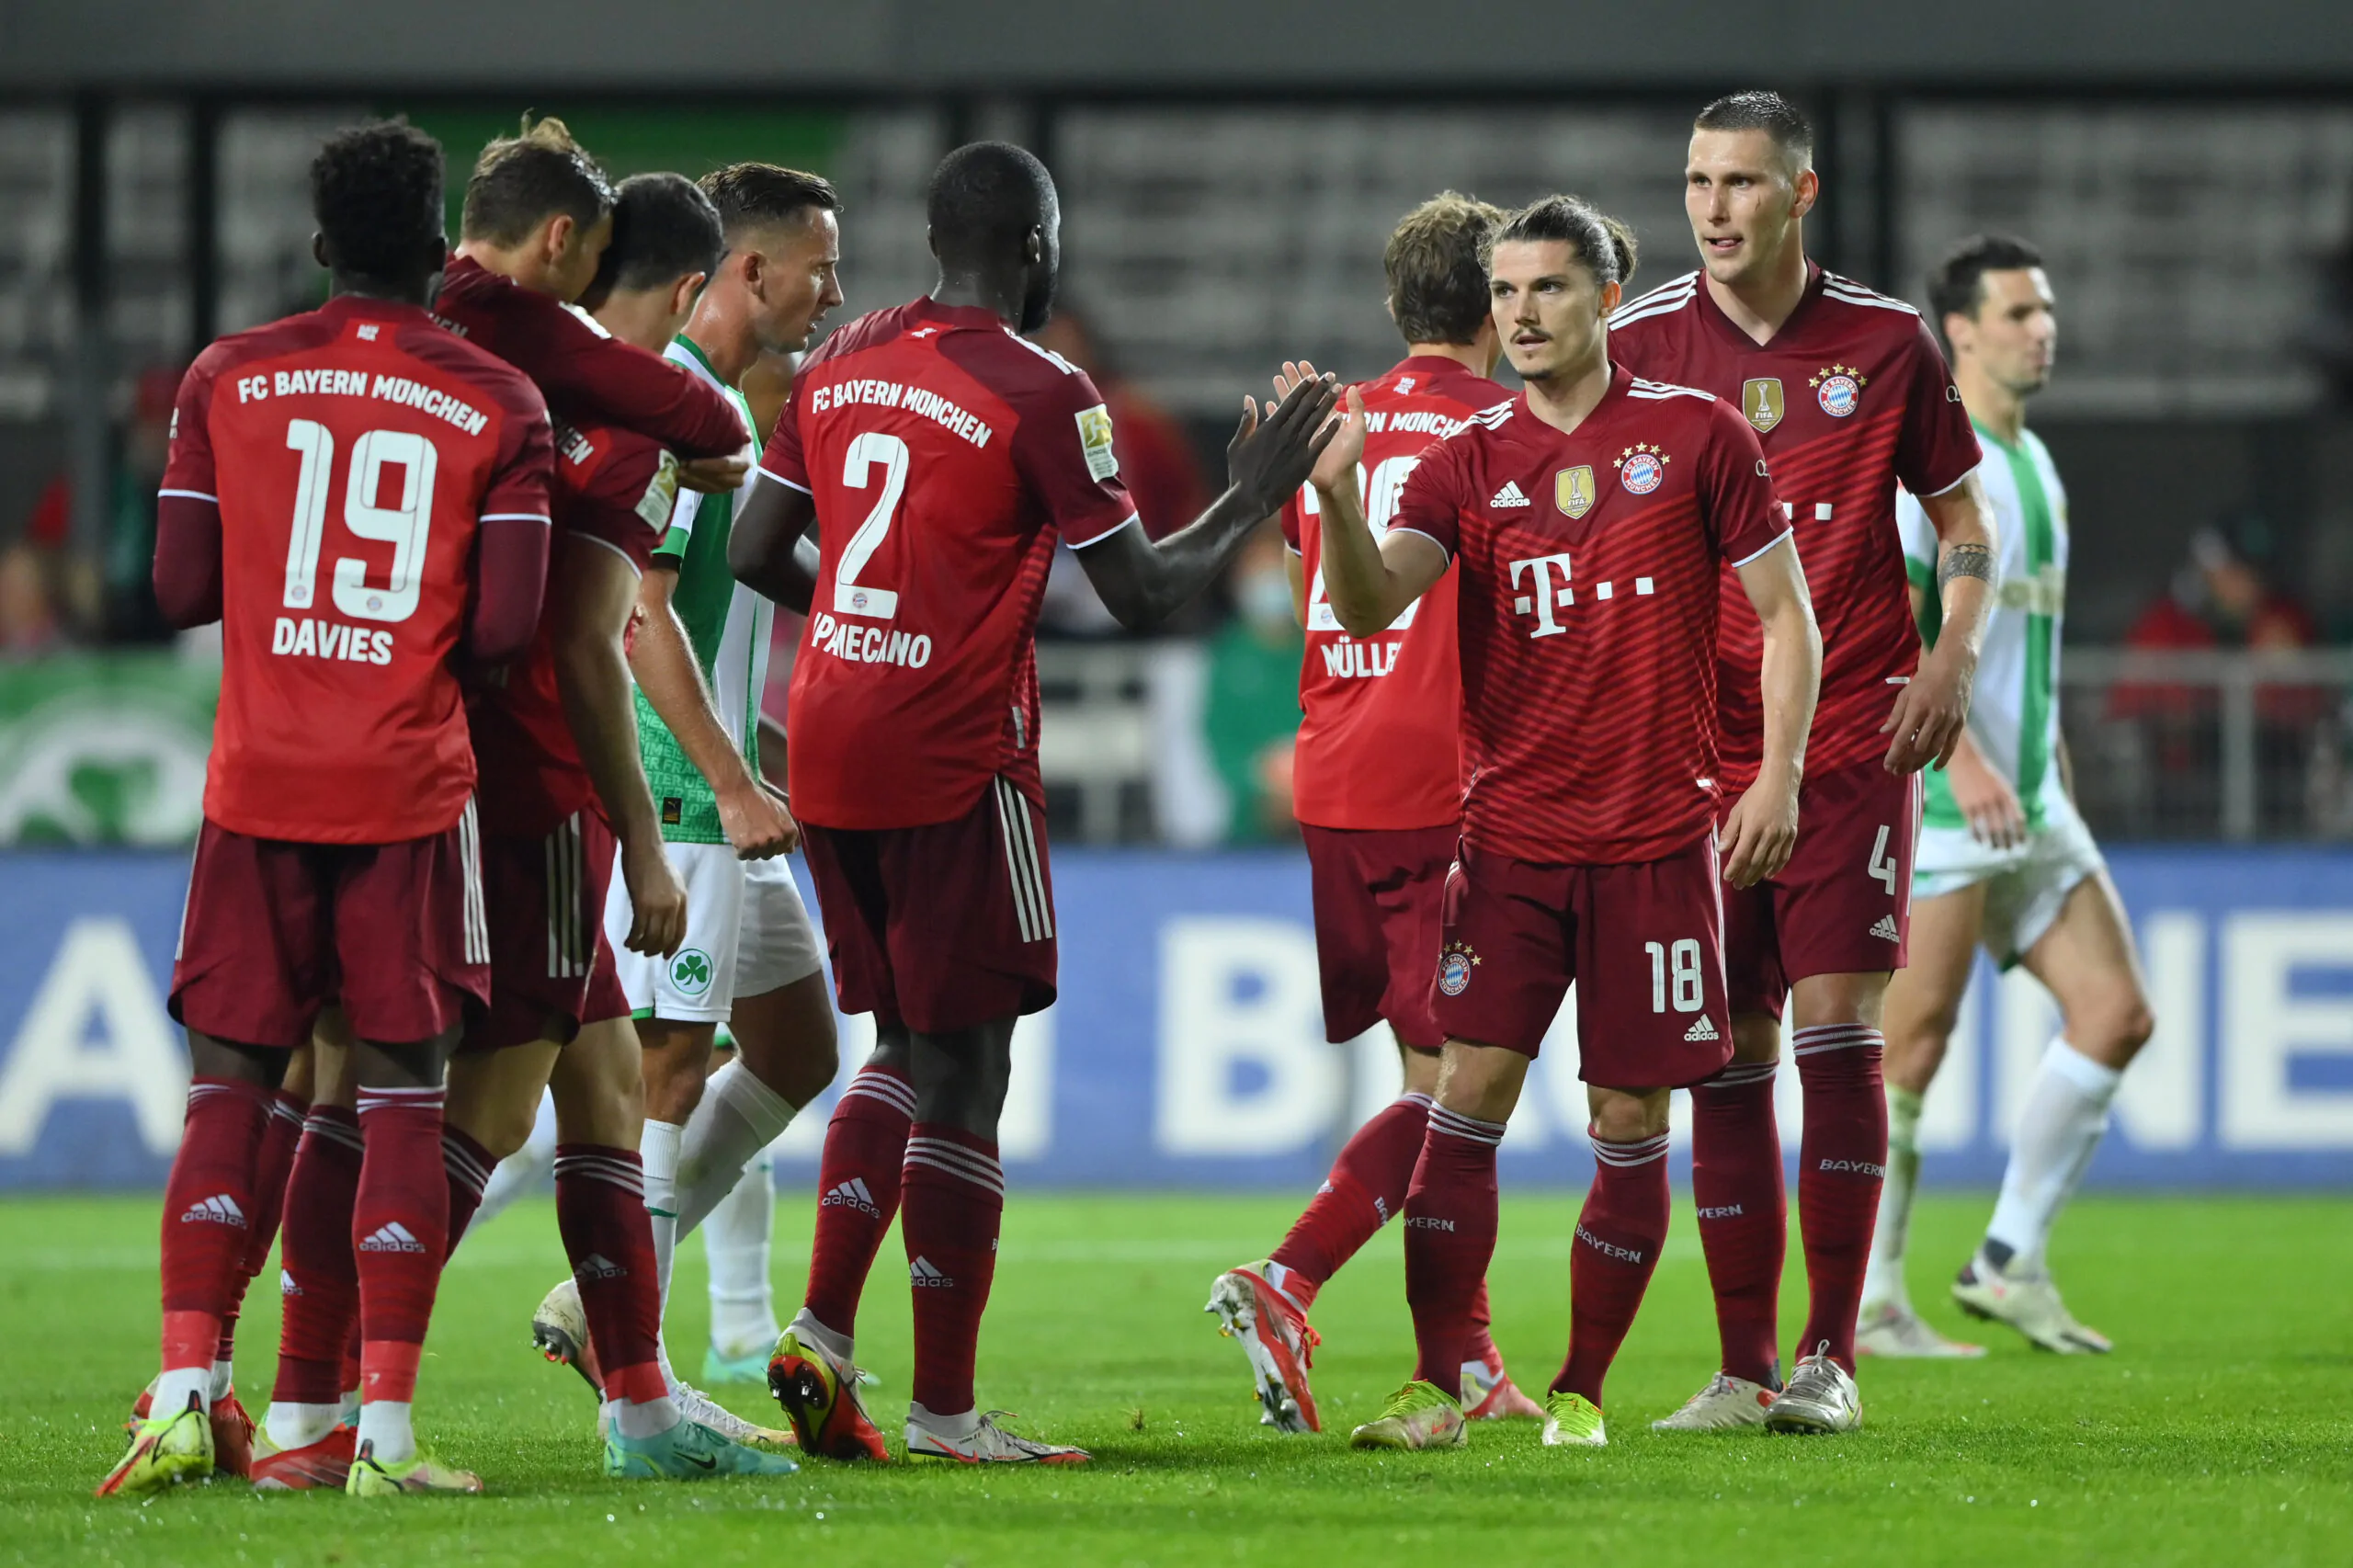 Play-off possibili in BundesLiga: la posizione del Bayern!